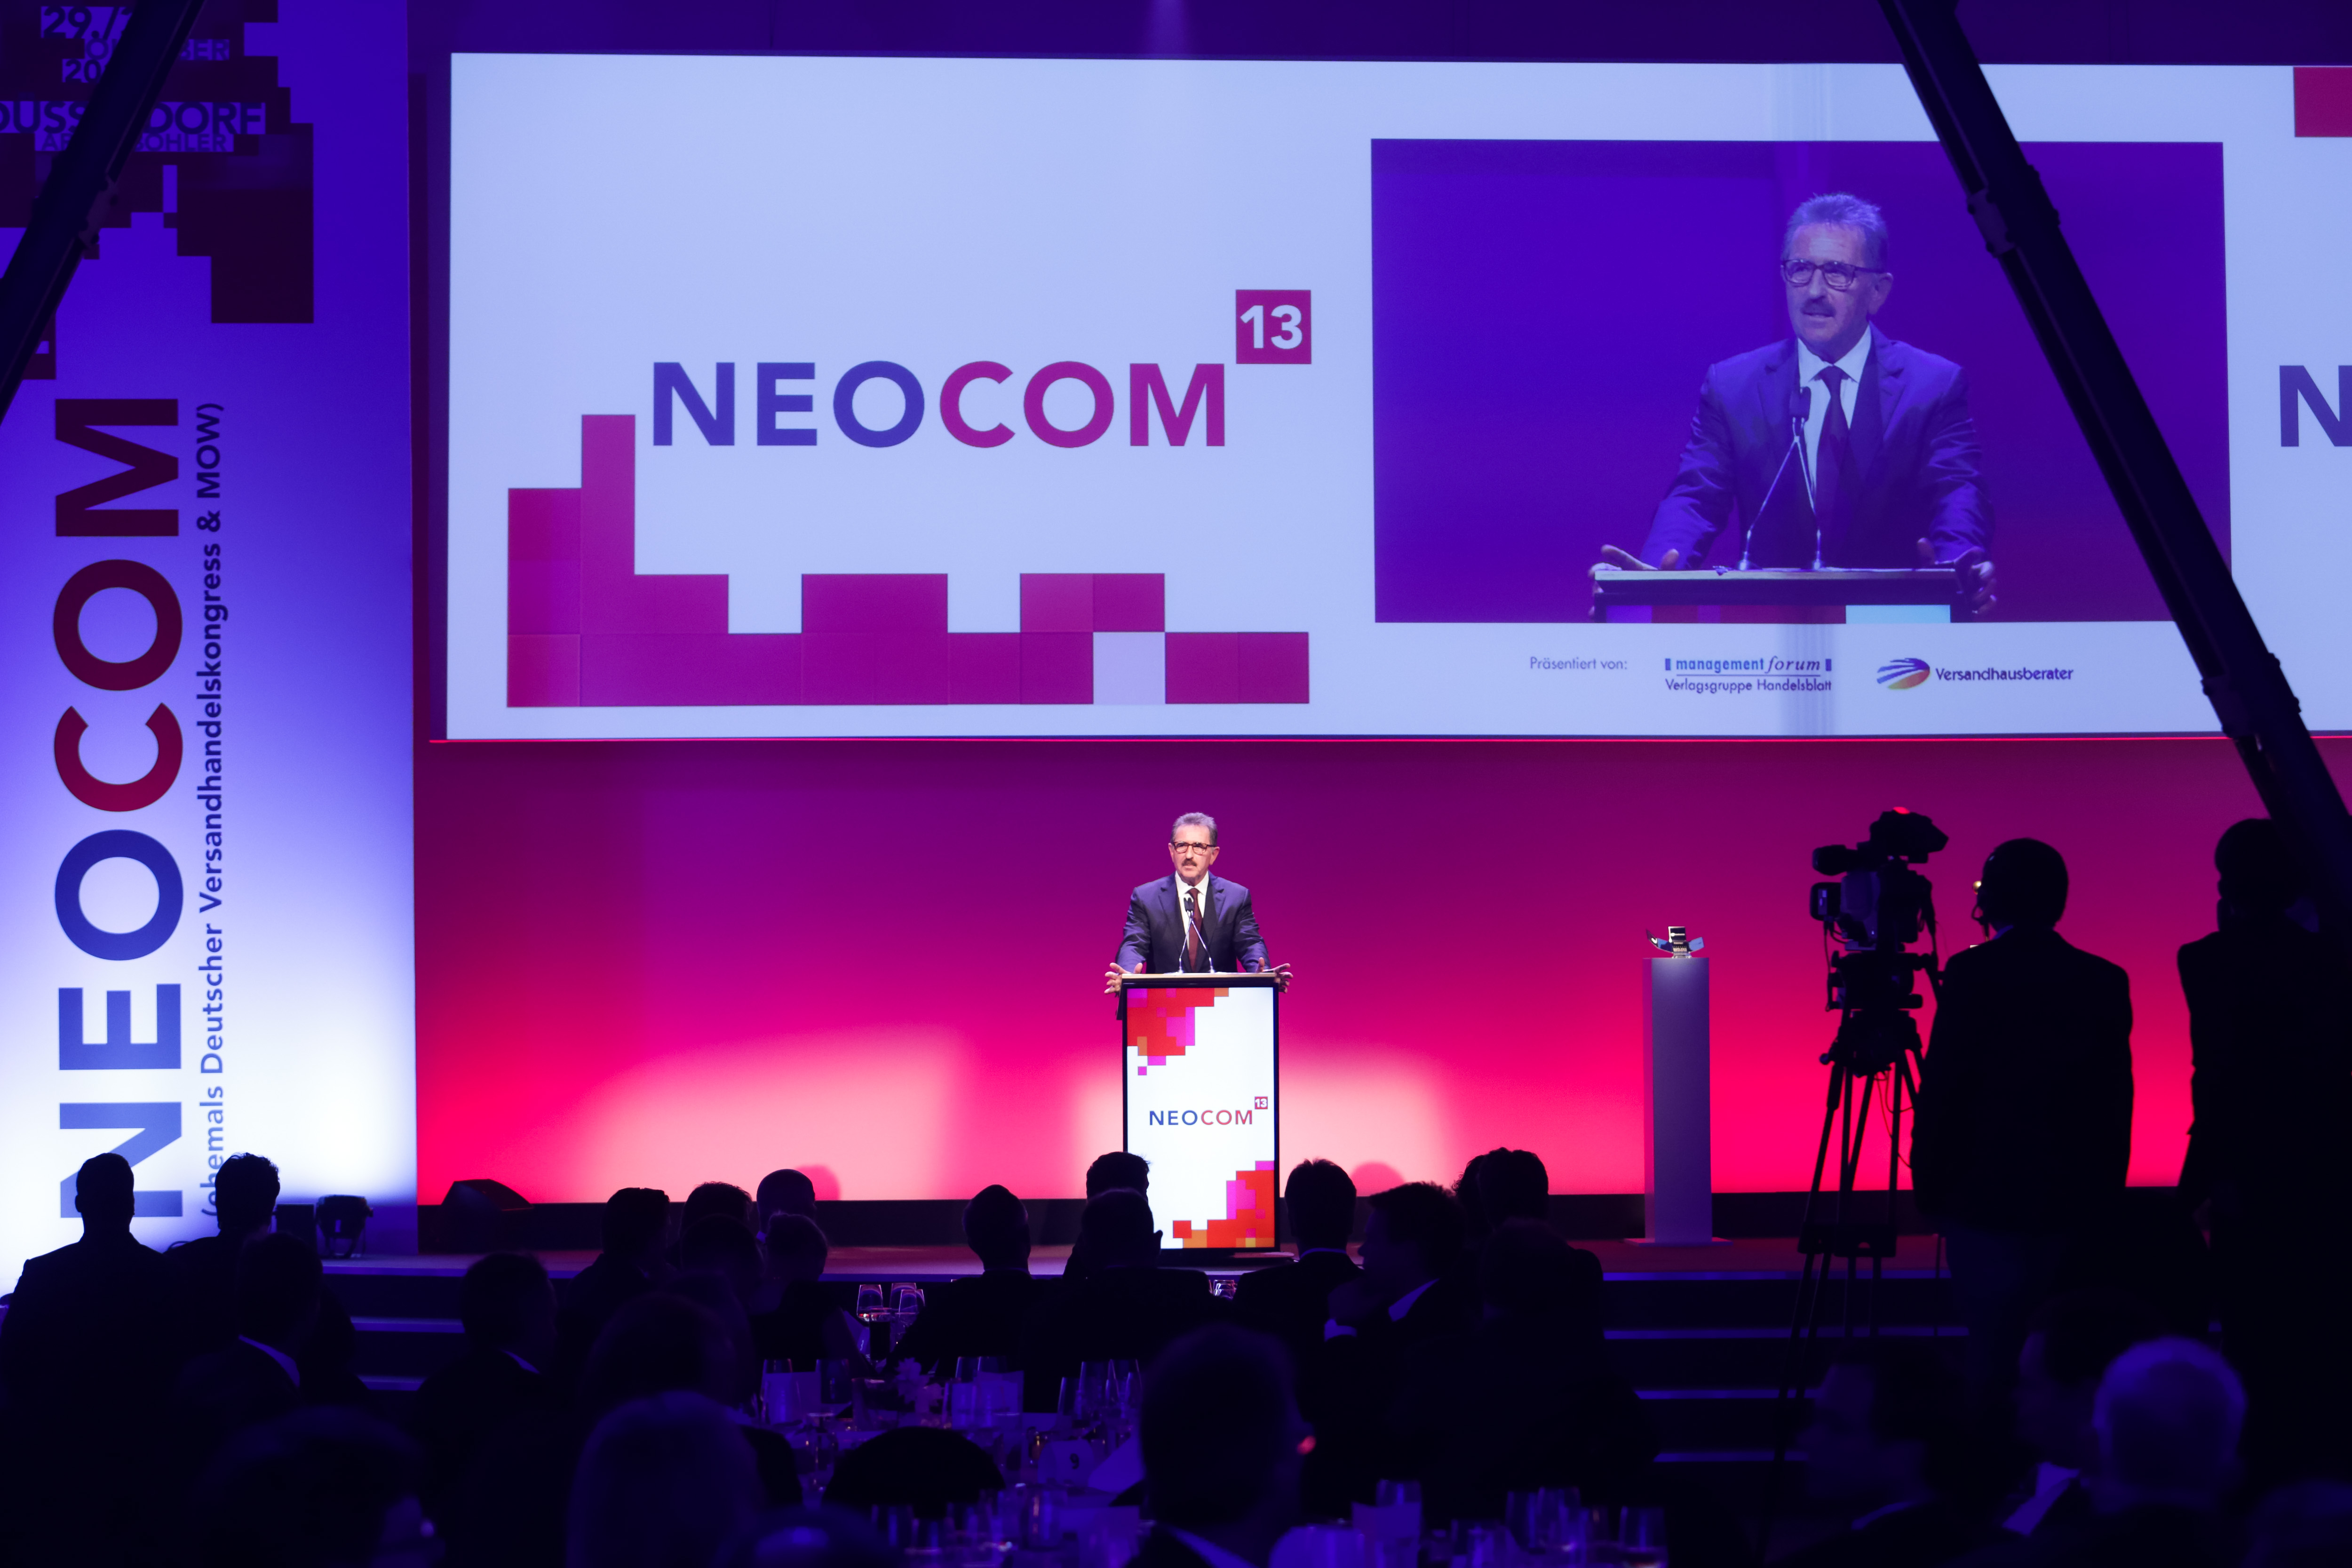 Die Neocom hat den Online-Shop des Jahres ausgezeichnet.